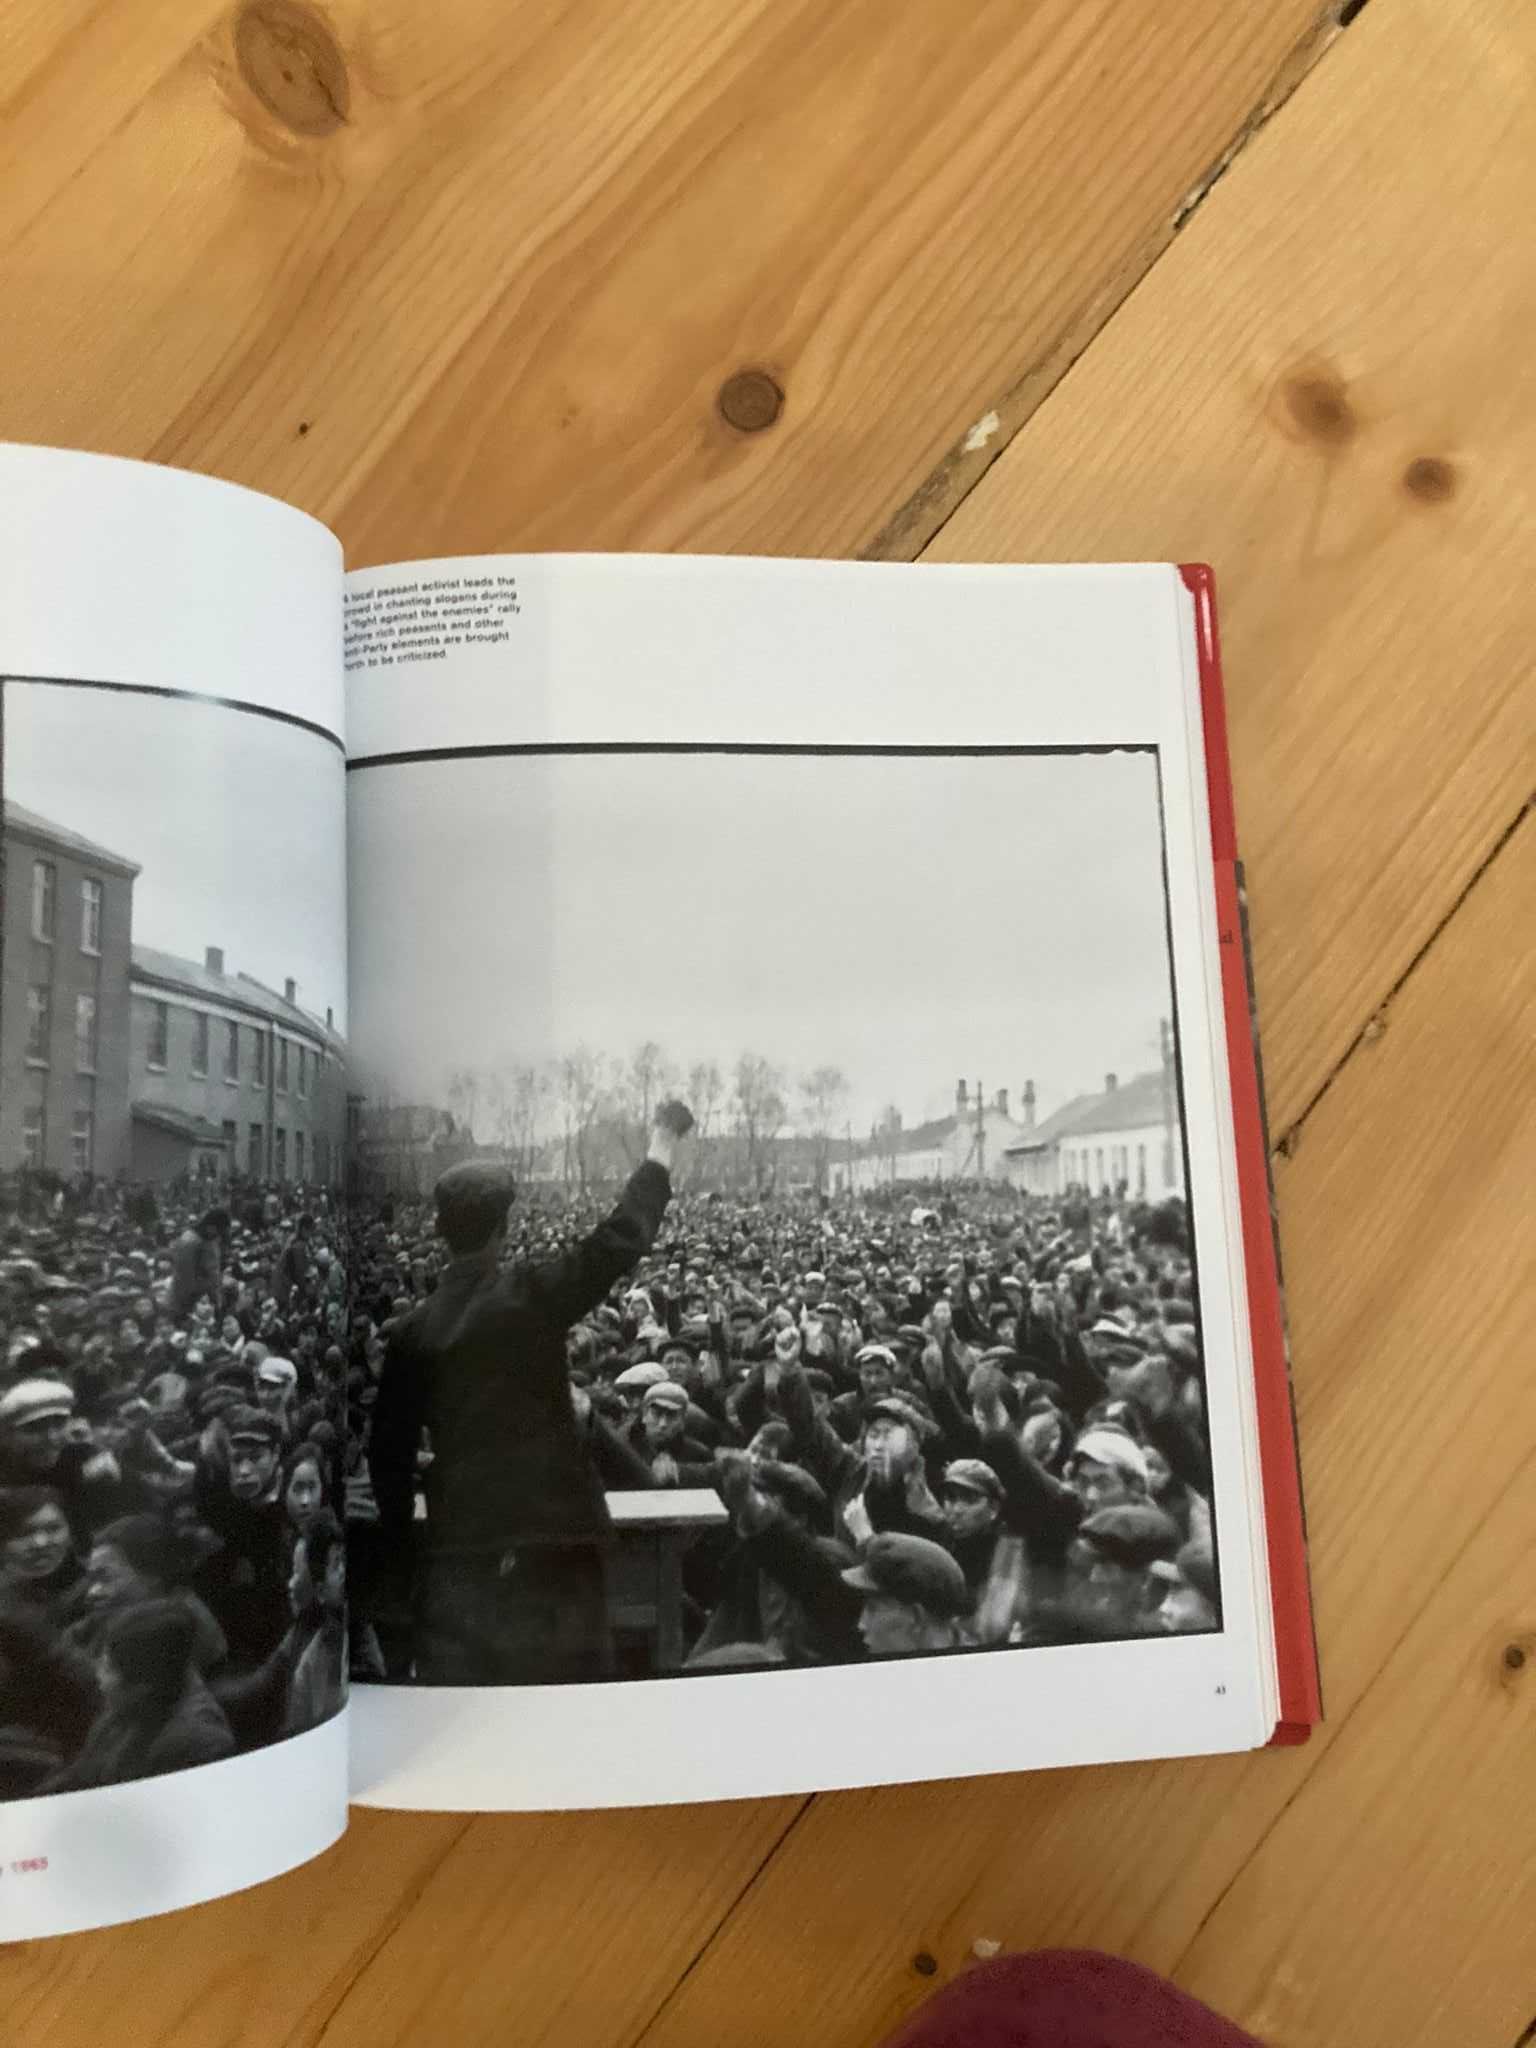 Red-Color News Soldier arhiva istorica revolutia culturala chineza